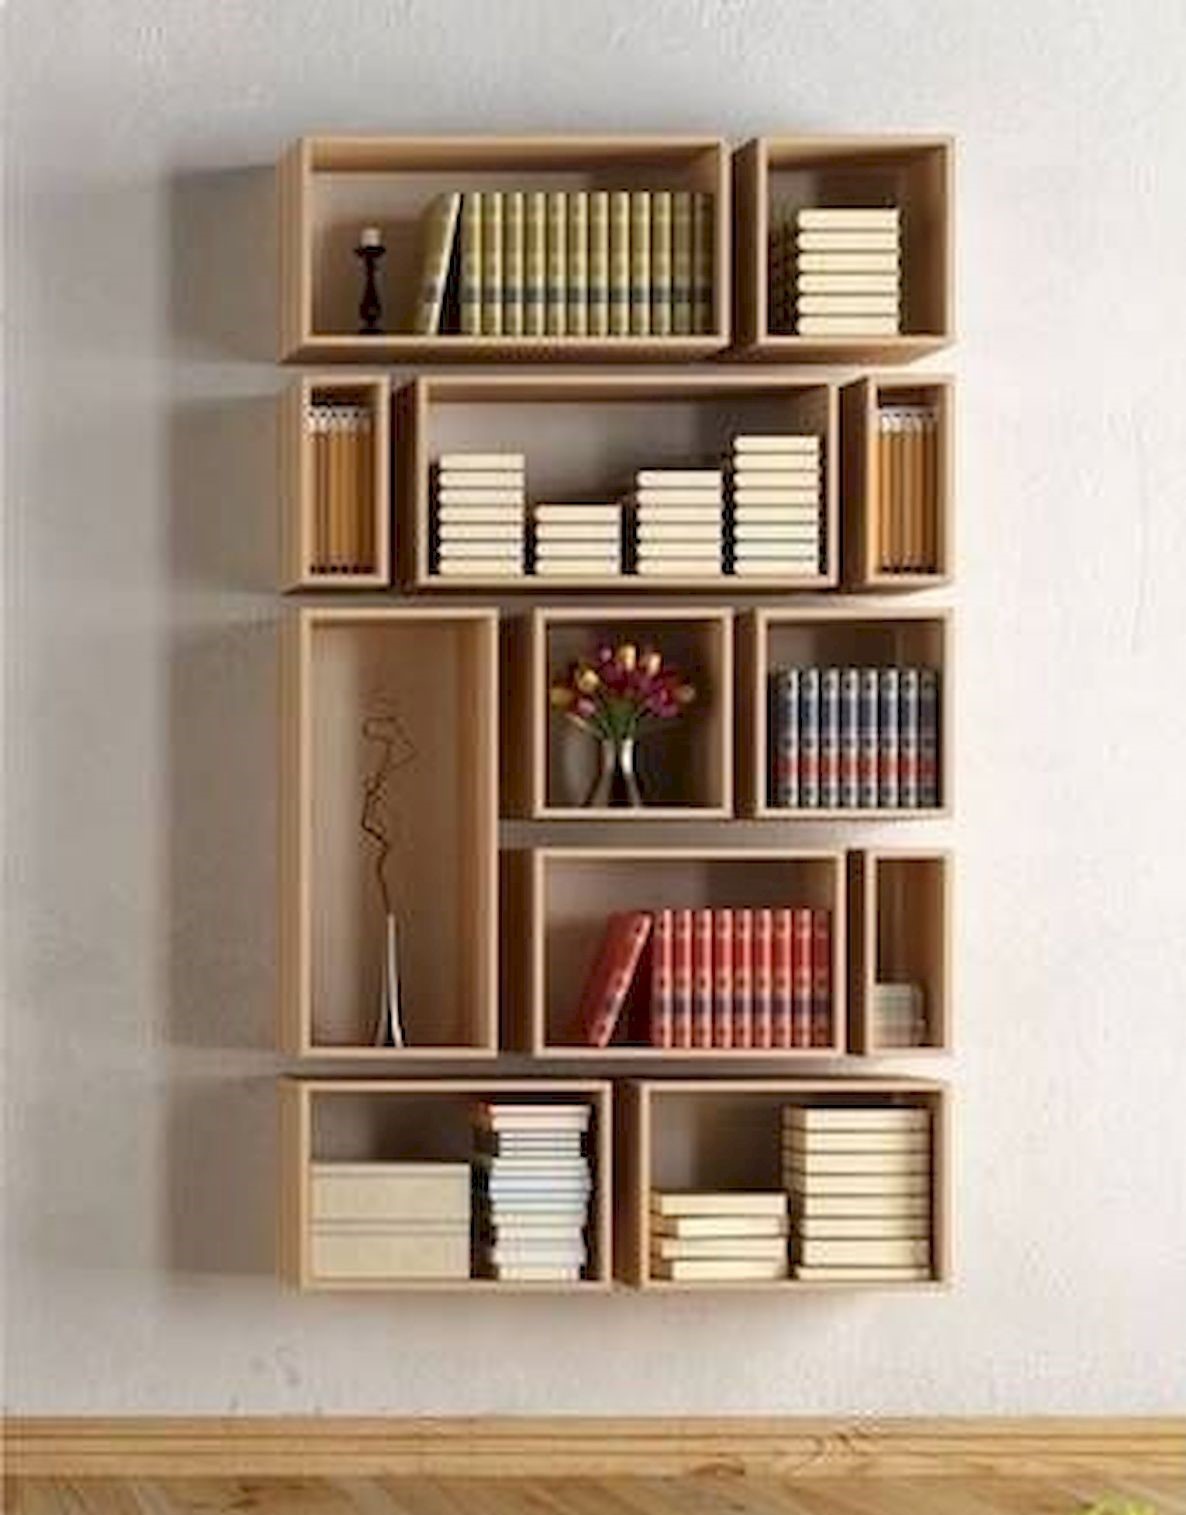 50 Amazing Diy Bookshelf Design Ideas For Your Home House8055 Com